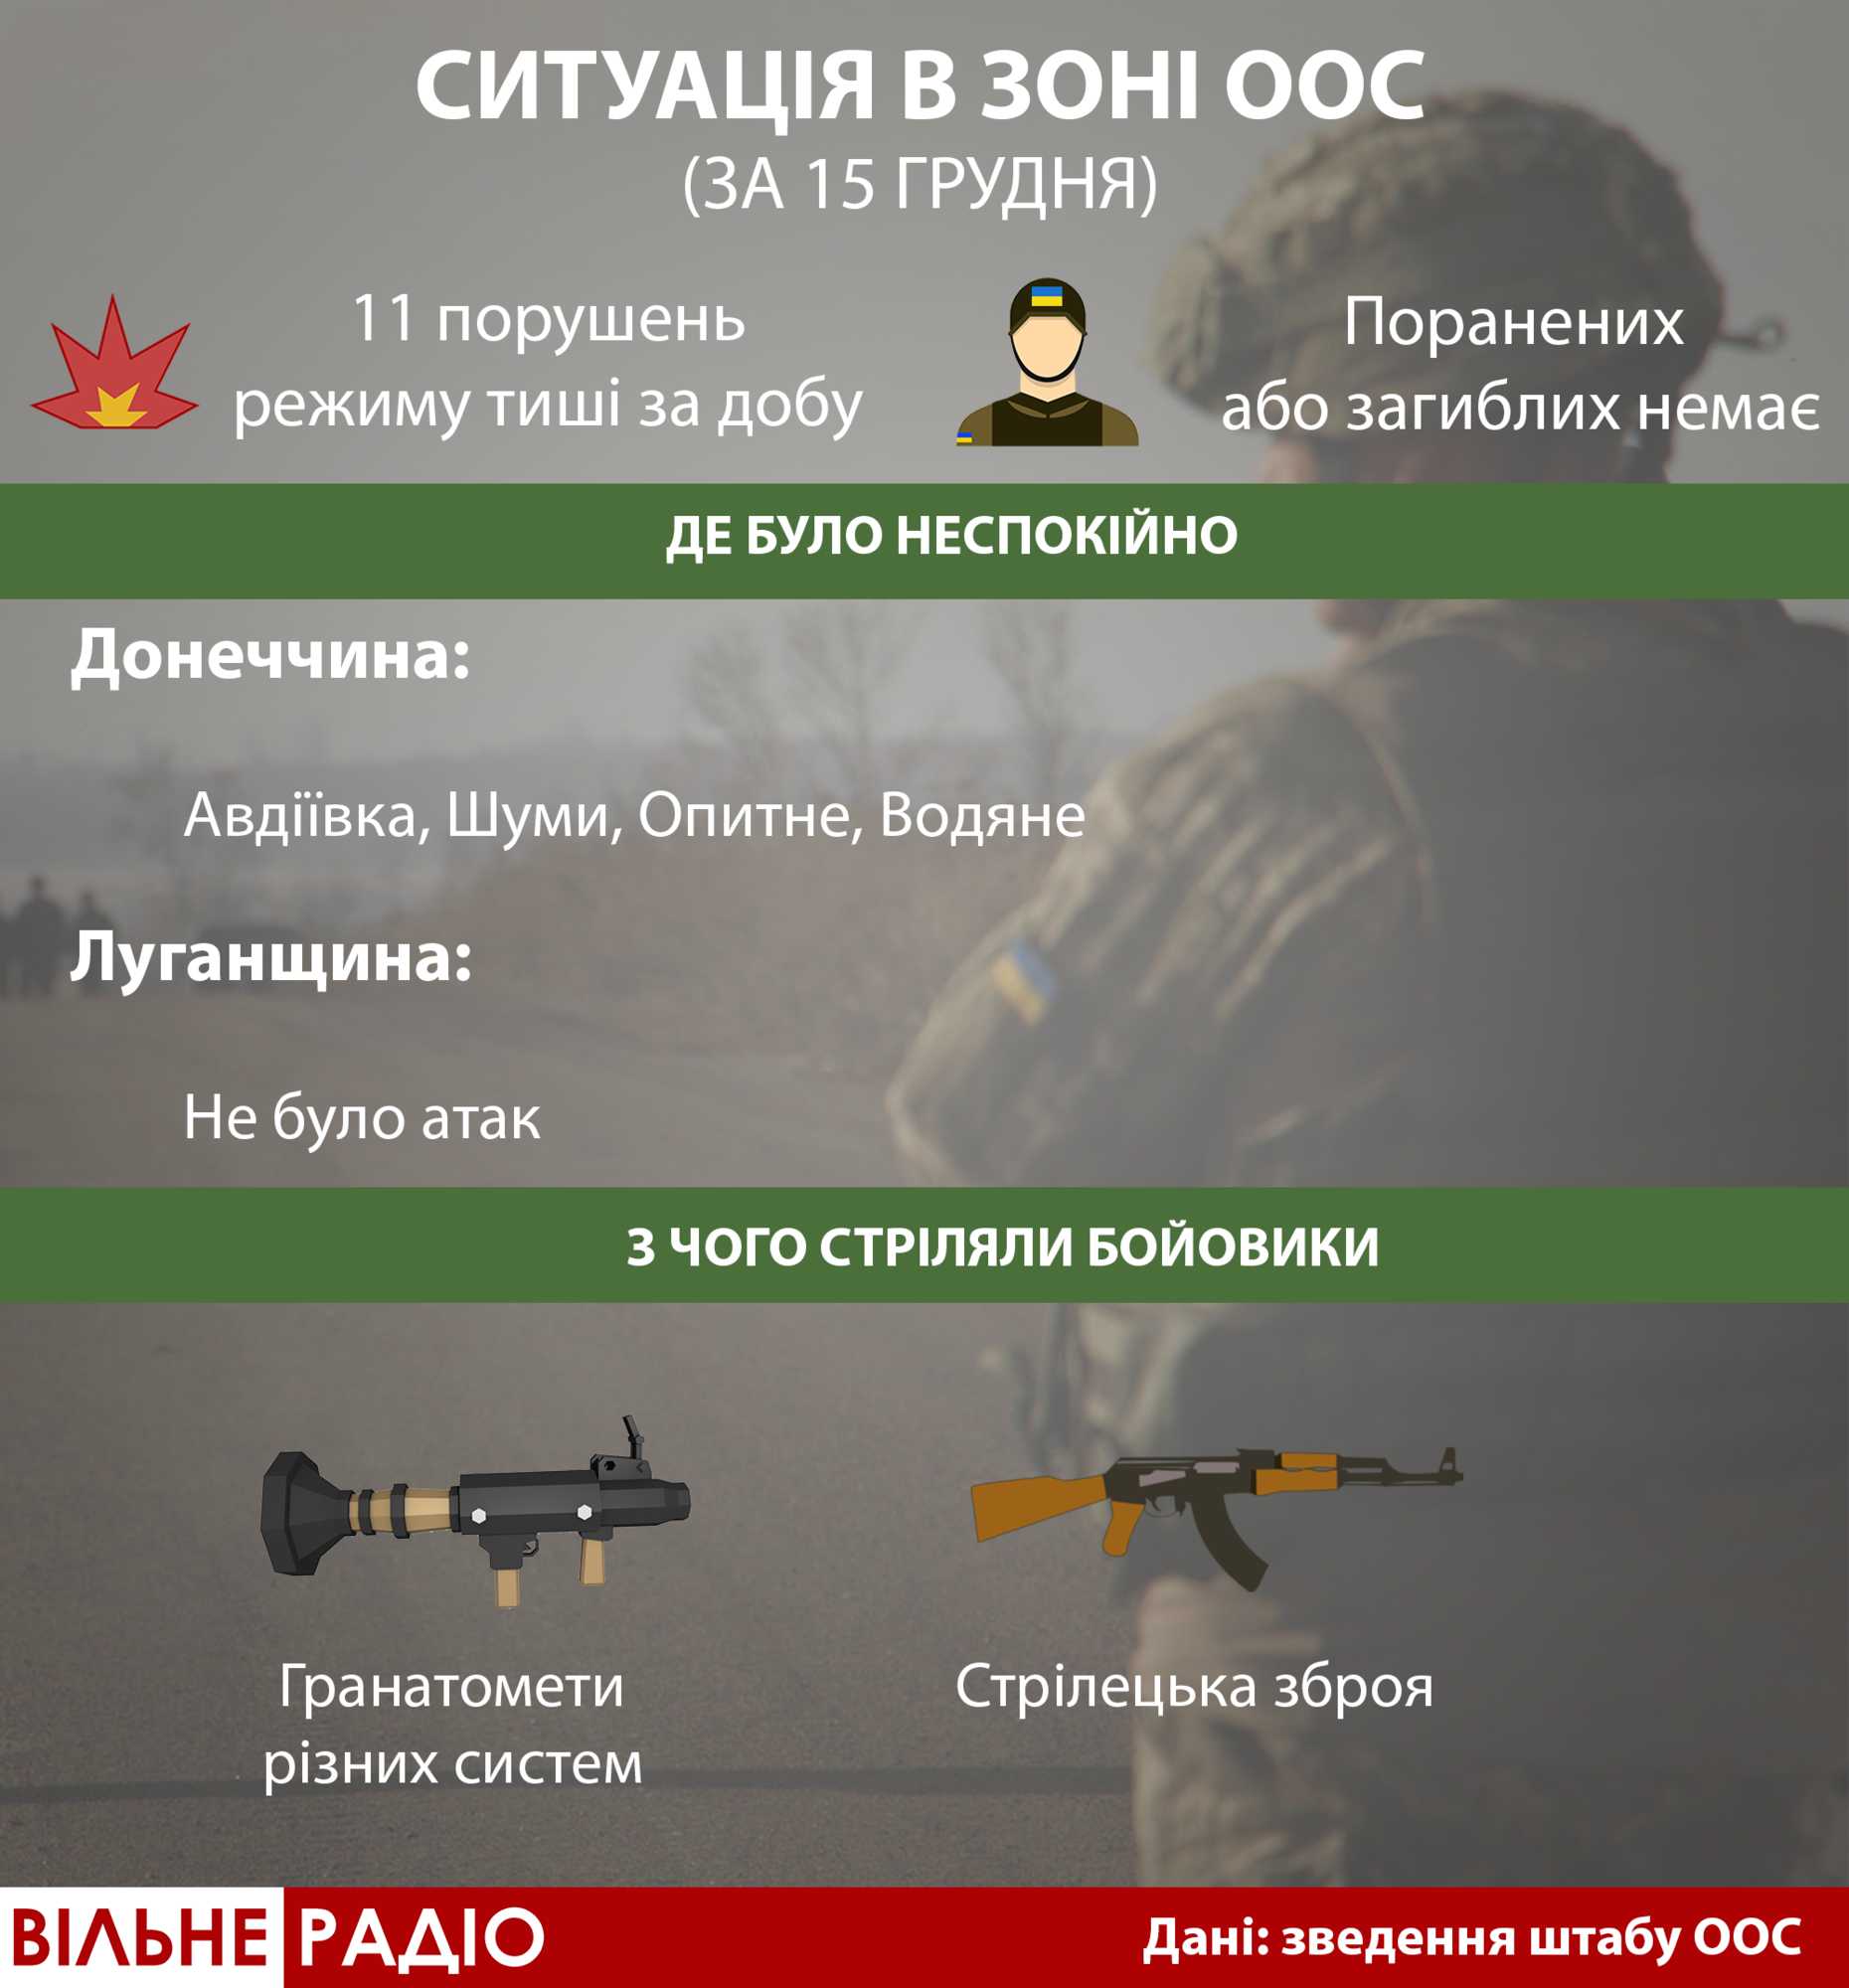 Доба на Донбасі: штаб ООС звітує про “неприцільні” 11 атак. А волонтери кажуть про пораненого в голову бійця